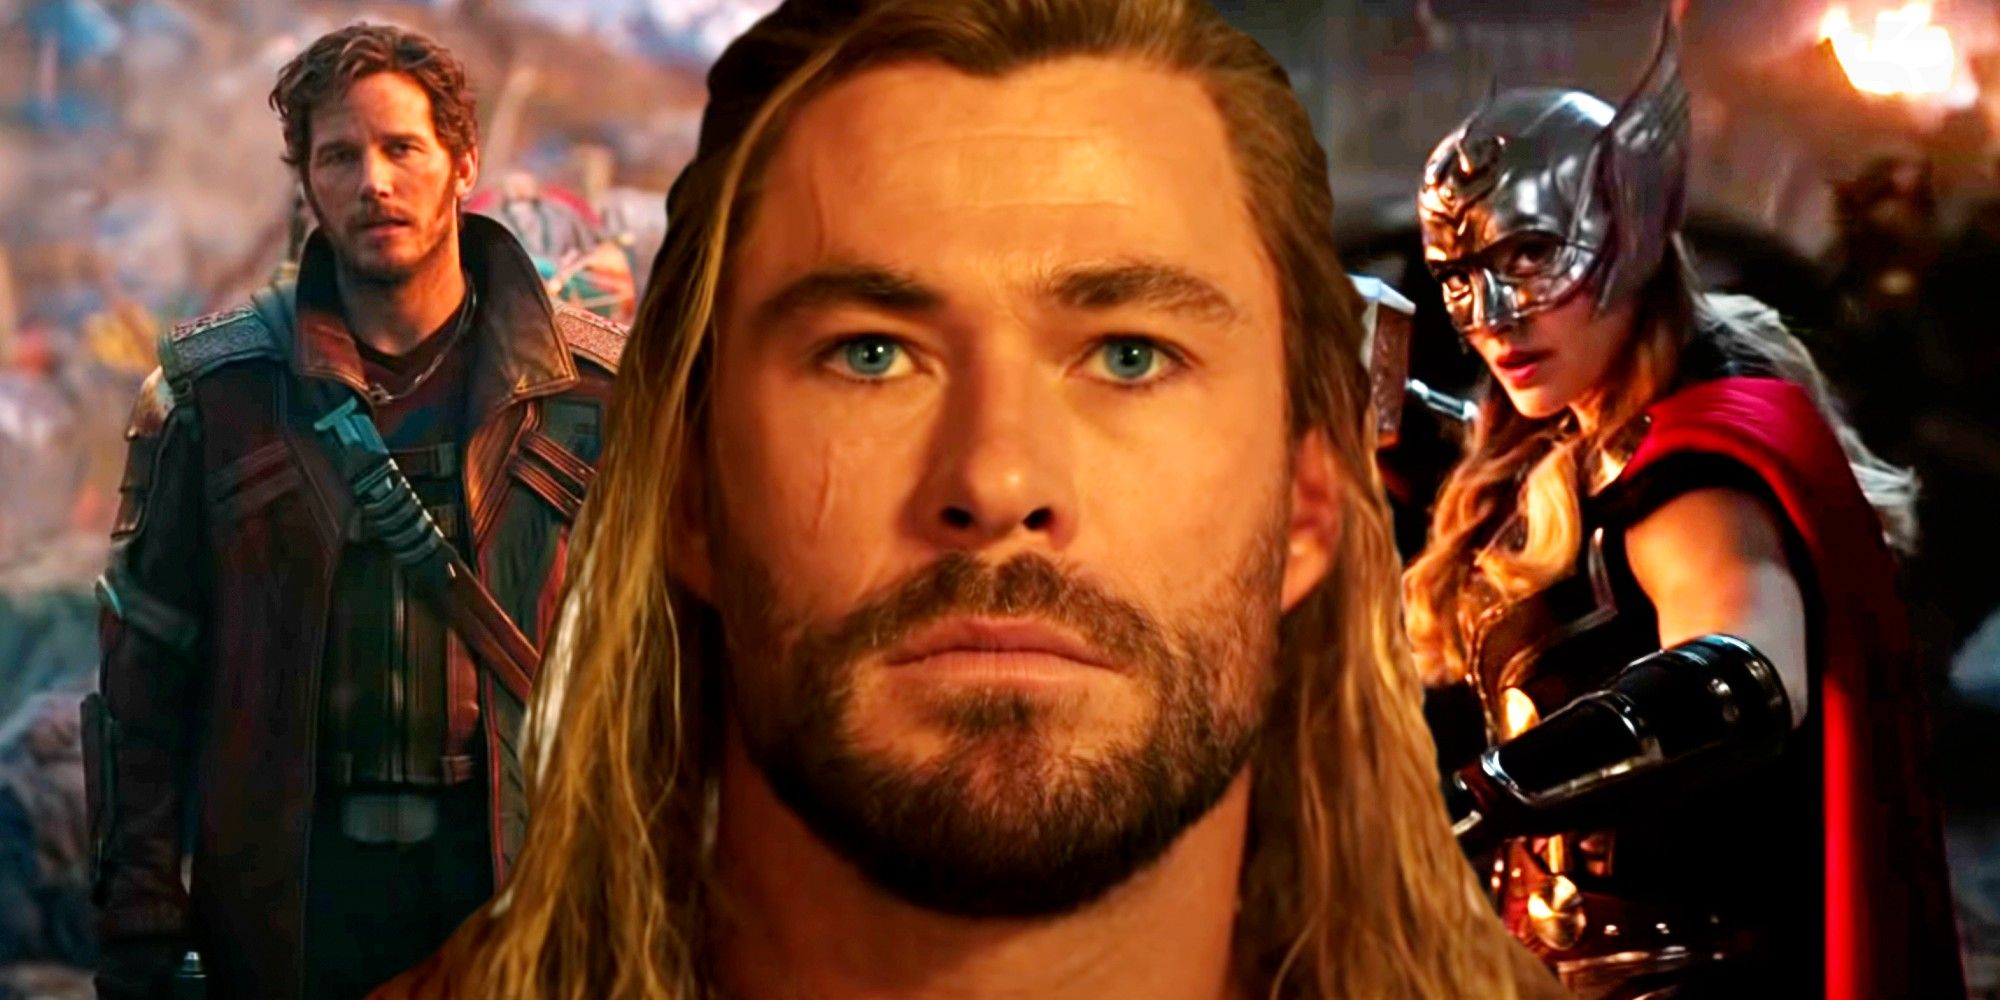 Thor: Love and Thunder Teaser Trailer